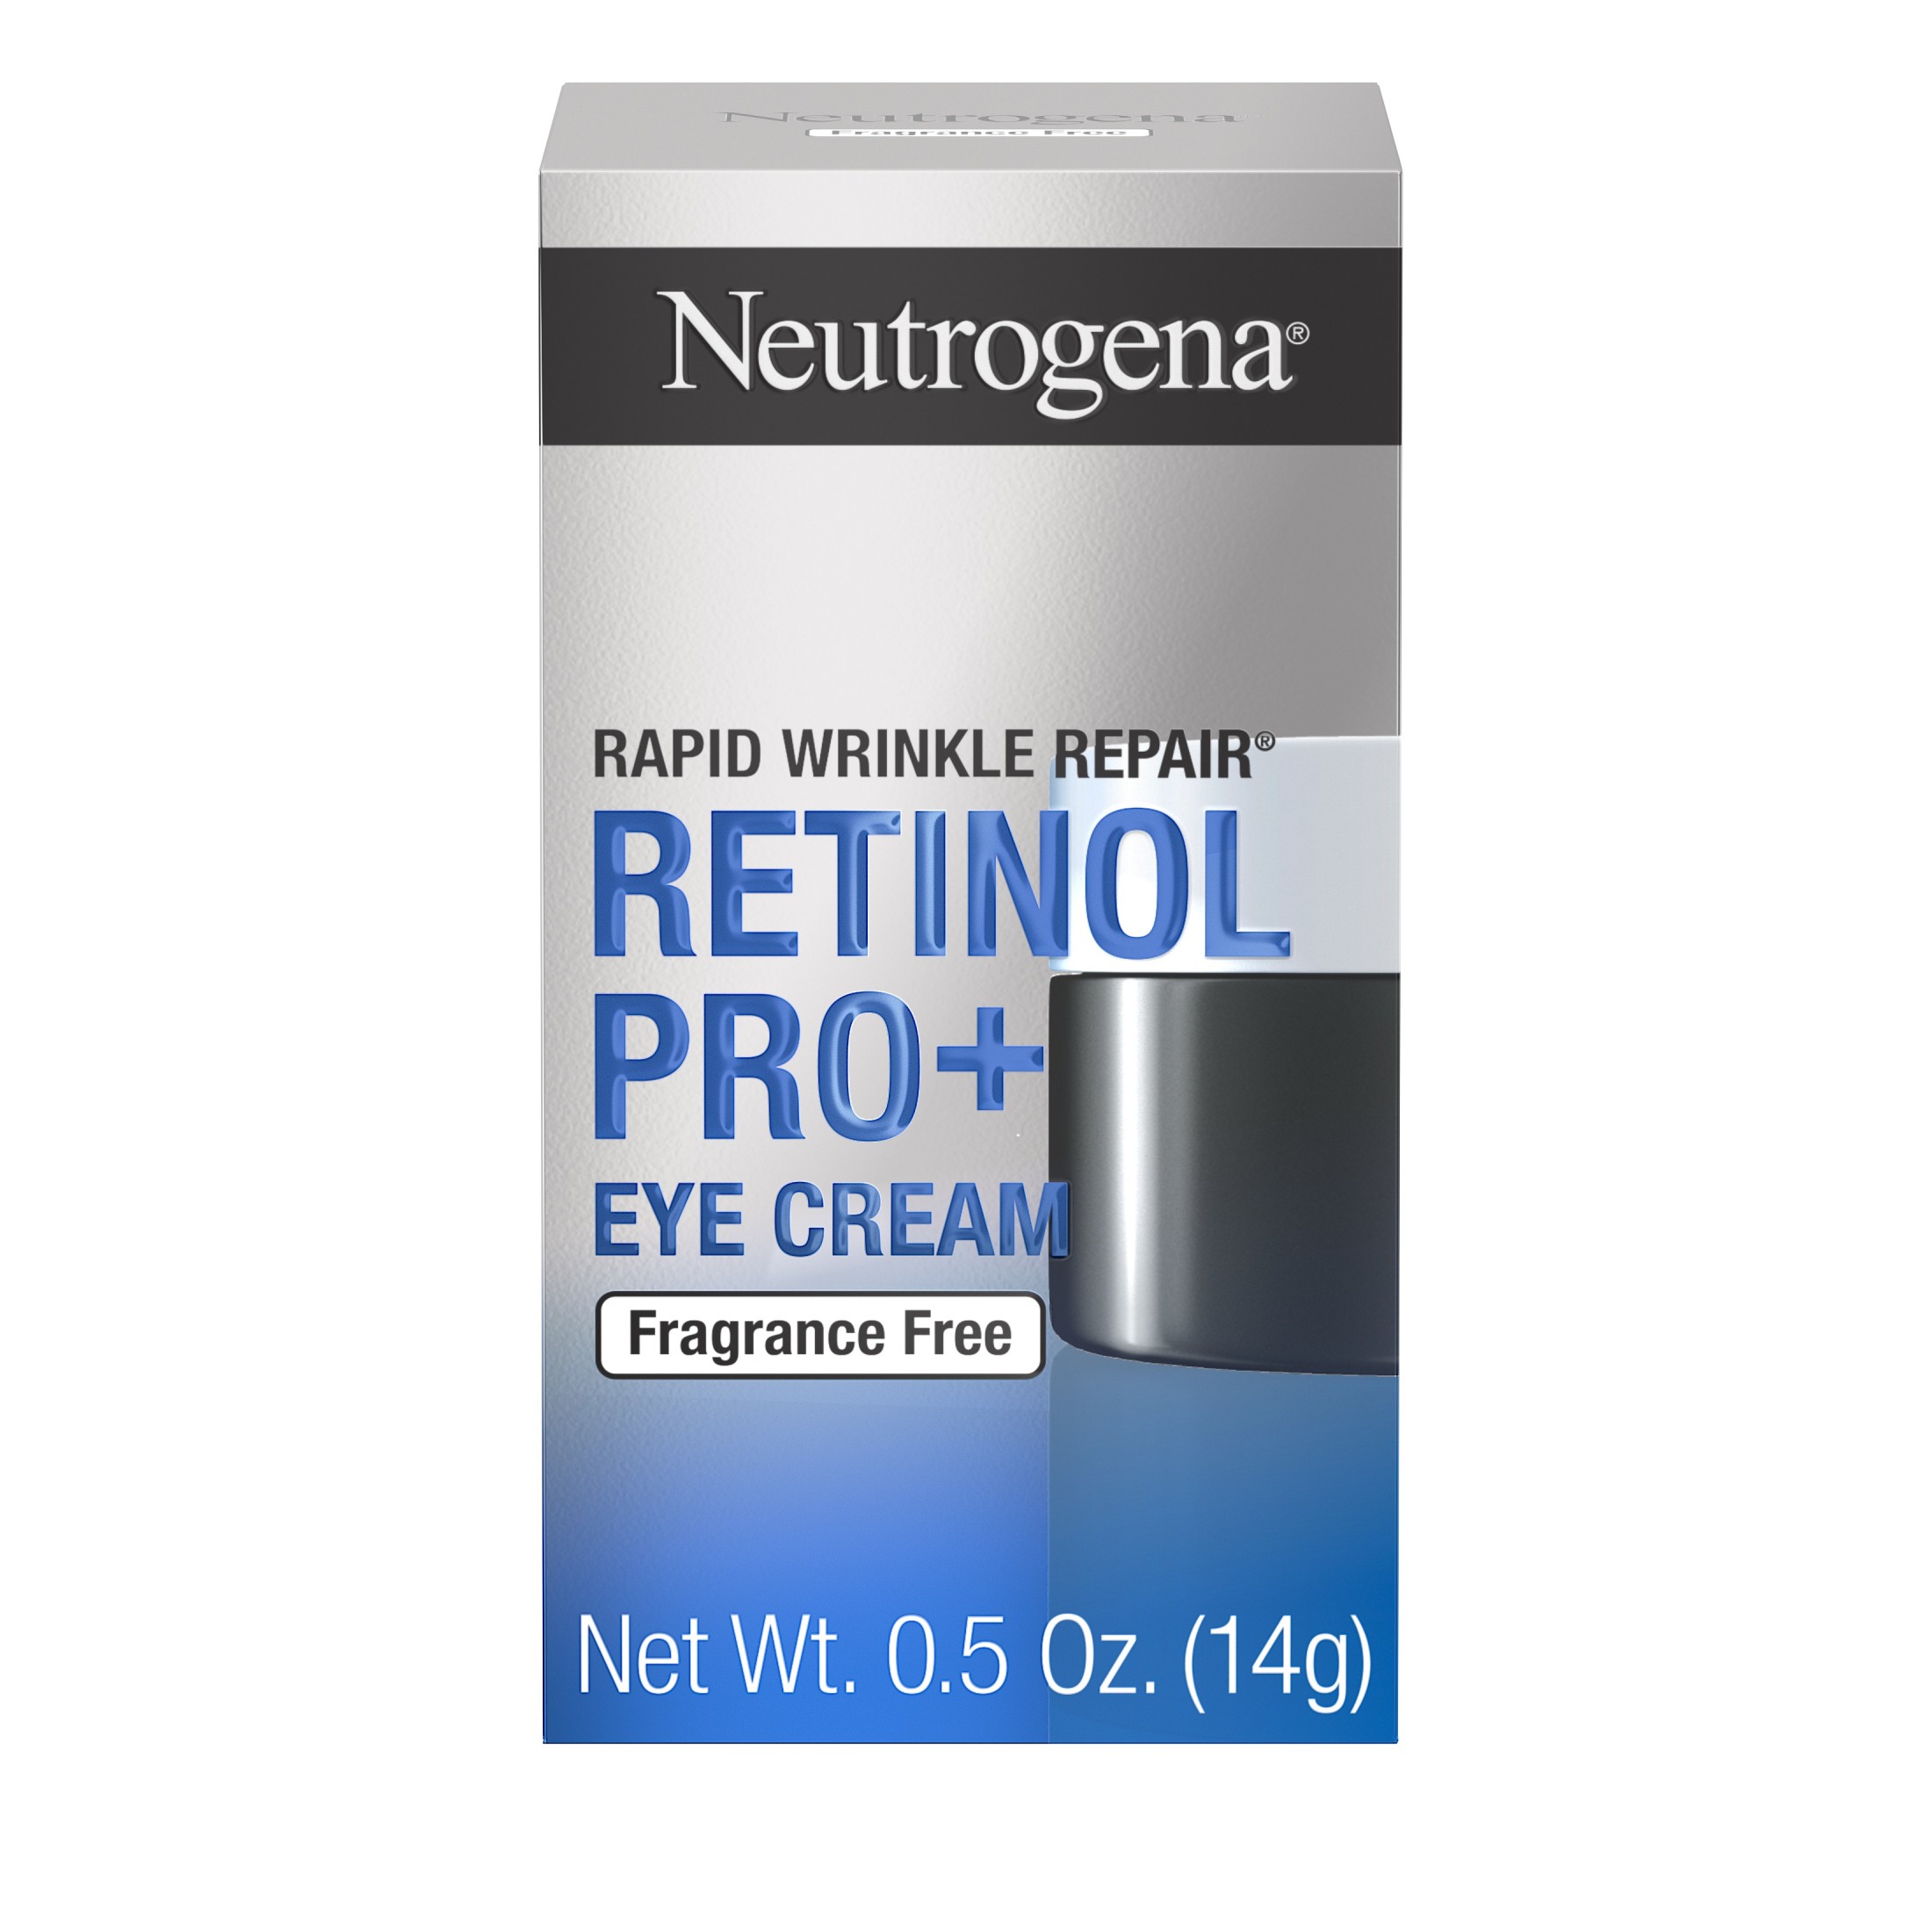 Neutrogena Unscented Visible Repair Retinol Pro+ Eye Cream, 0.5 oz, Size: 0.5 Oz. (14g), Blue